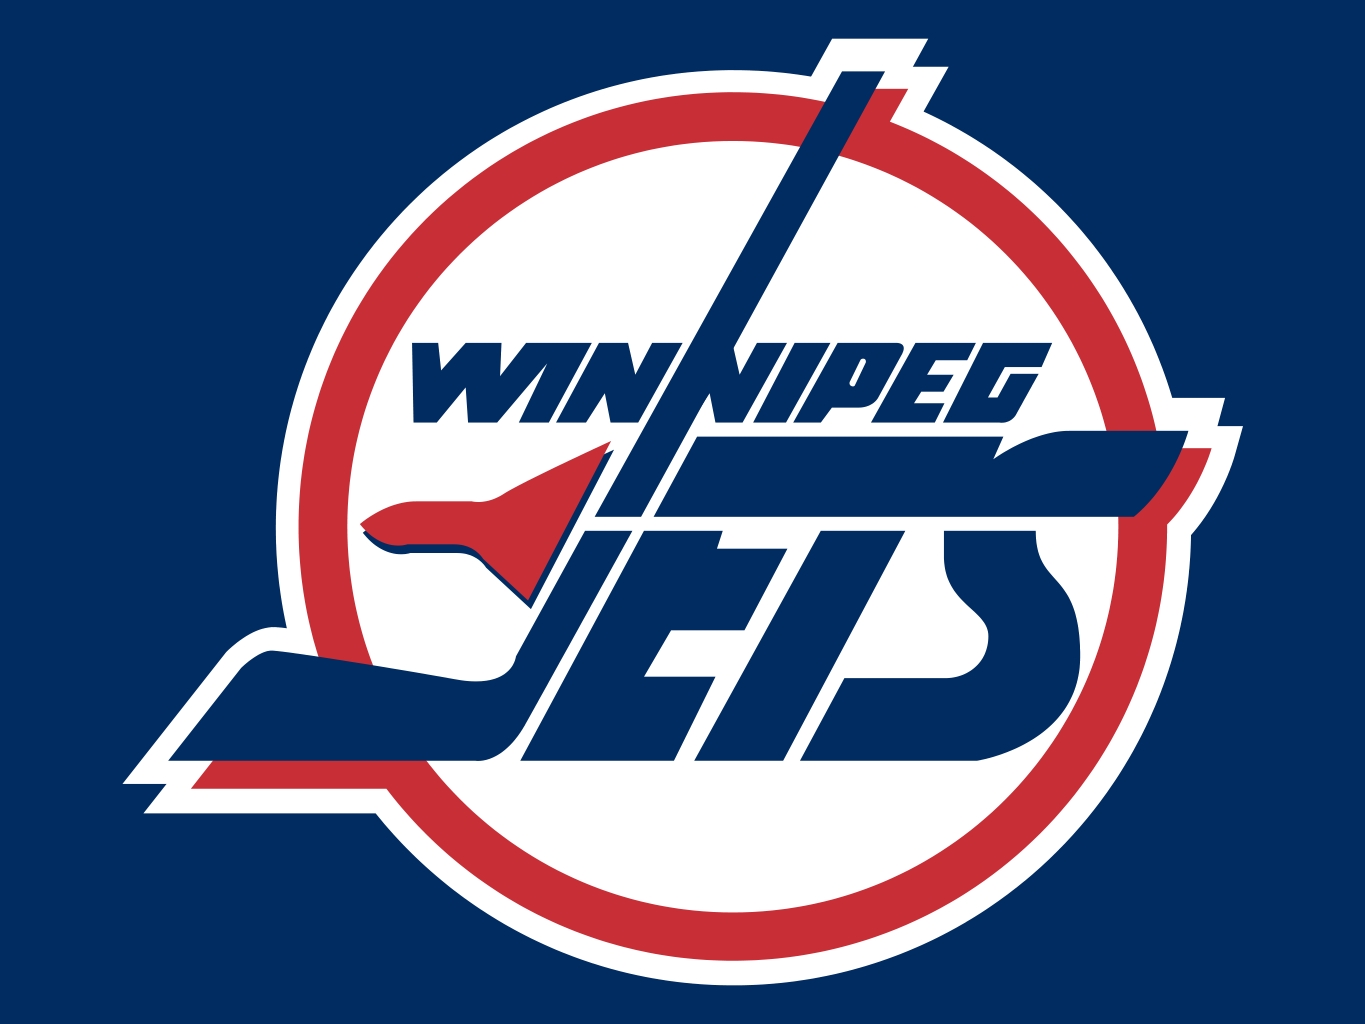 Winnipeg Jets (original) Major League Sports Wiki Fandom